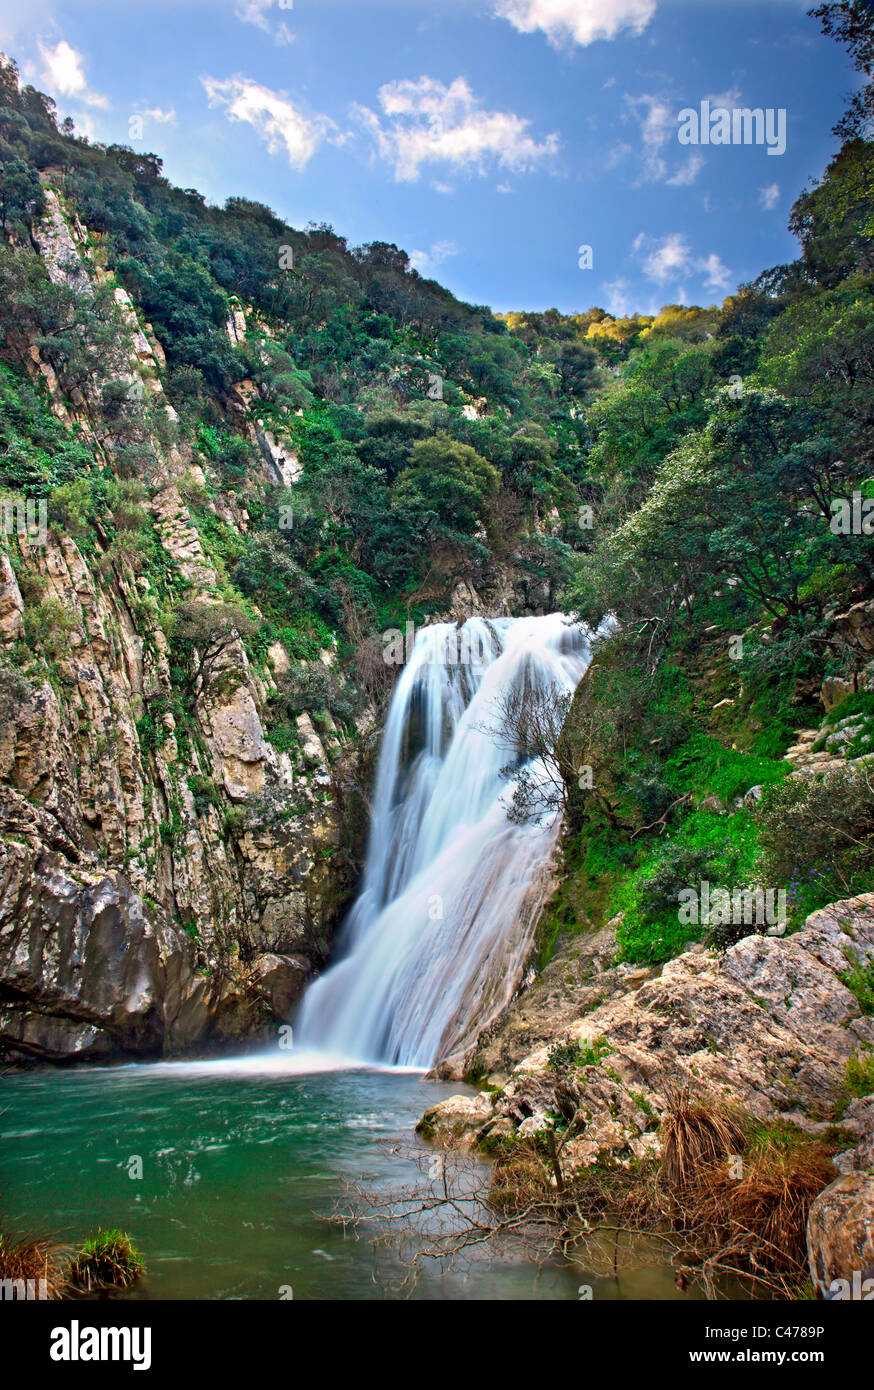 Una delle tante cascate a Polylimnio, un luogo di eccezionale bellezza naturale alla prefettura di Messinia, Peloponneso, Grecia Foto Stock